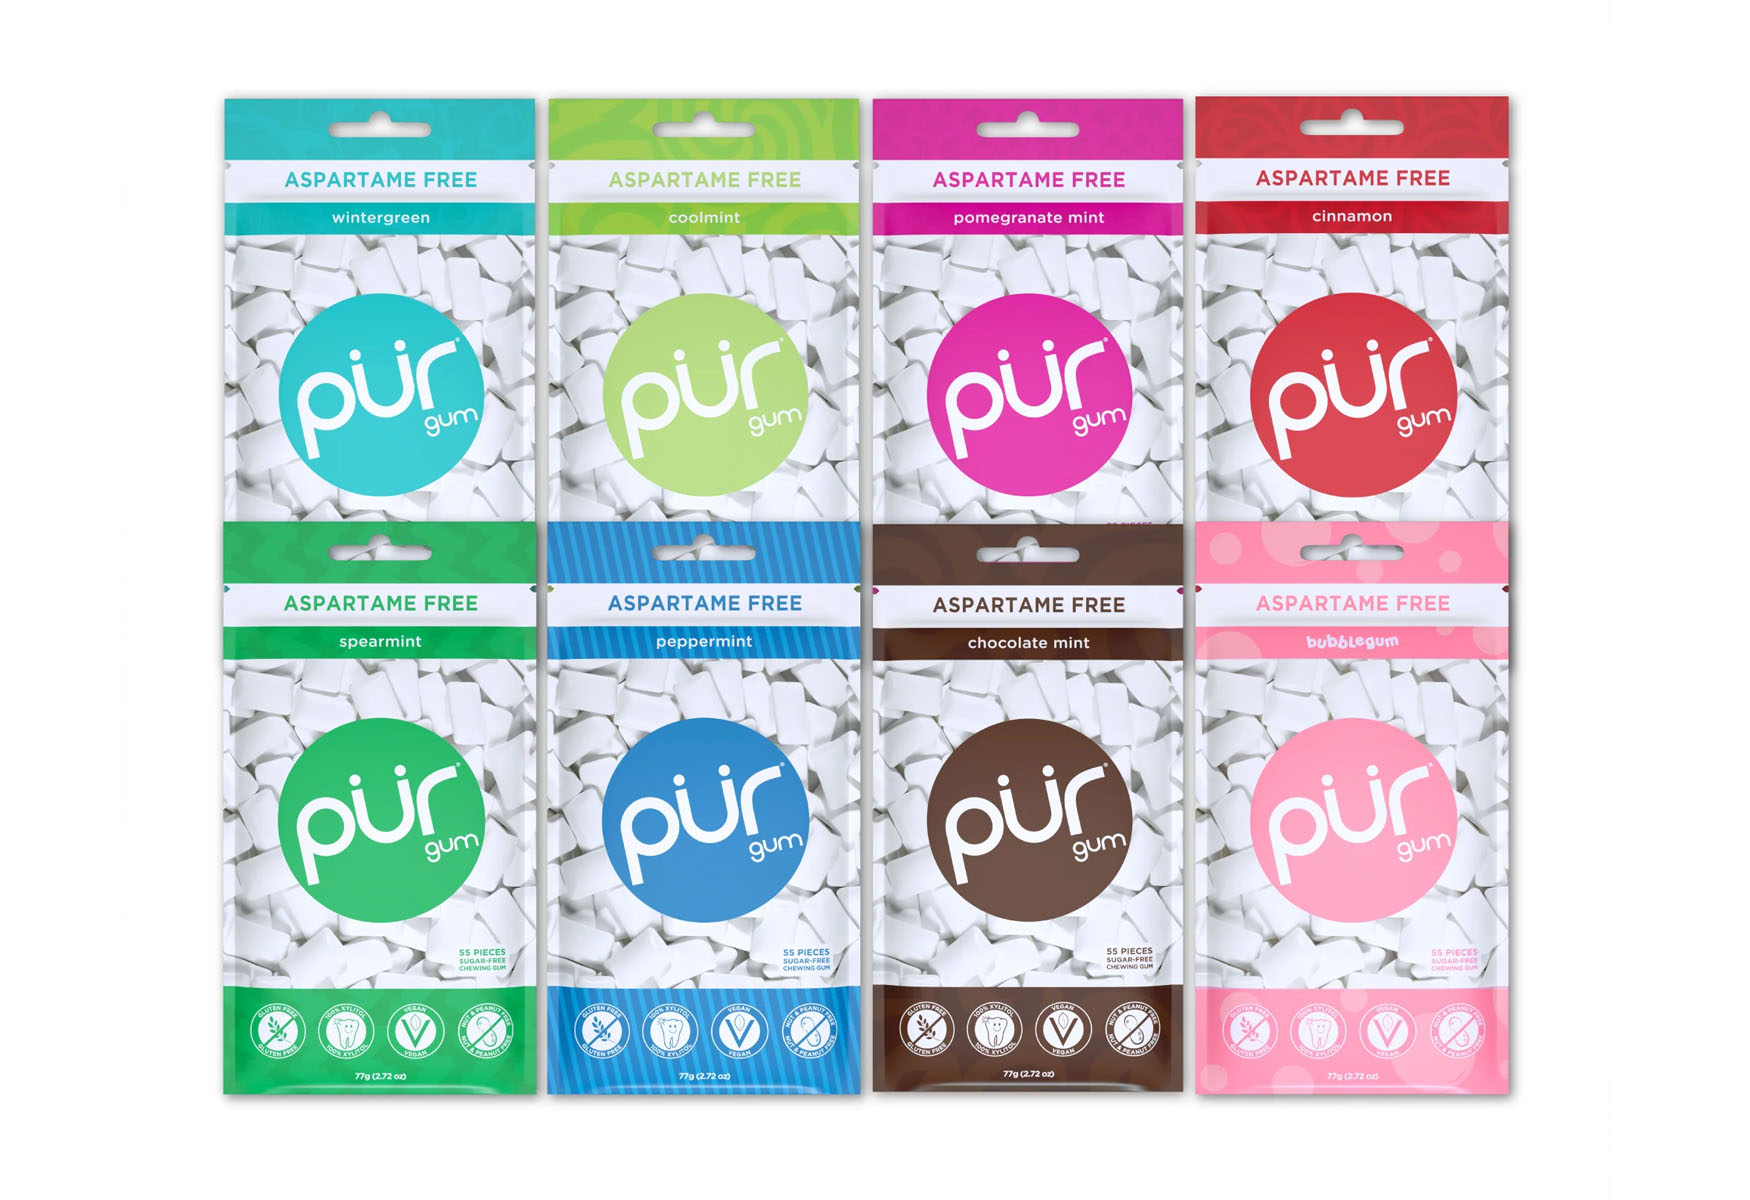 19-pur-gum-nutrition-facts